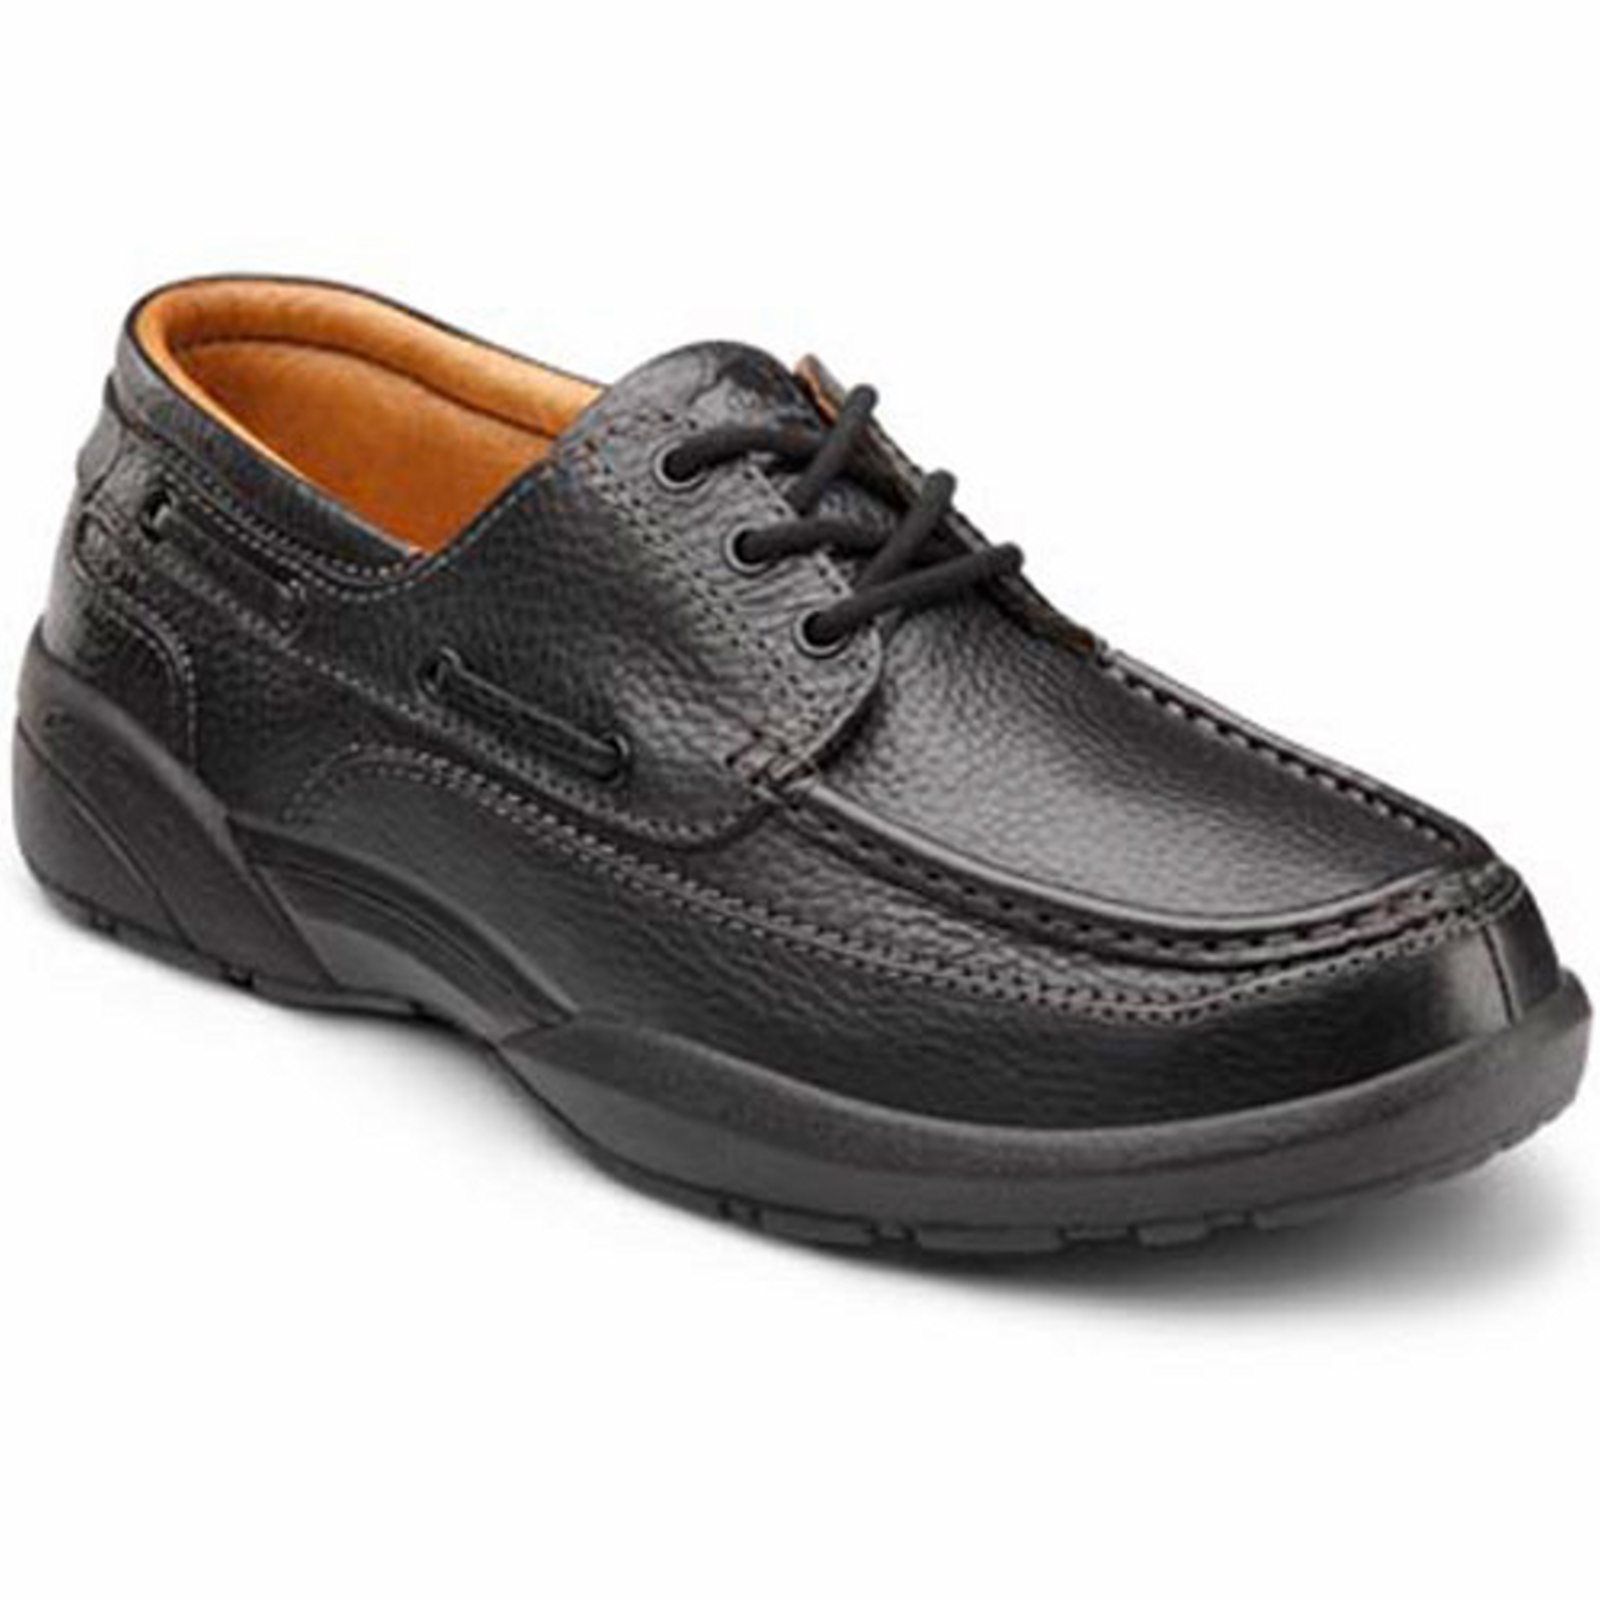 Dr. Comfort Patrick Men's Boat Shoe: 8.5 Wide (E/2E) Black Lace - image 1 of 4